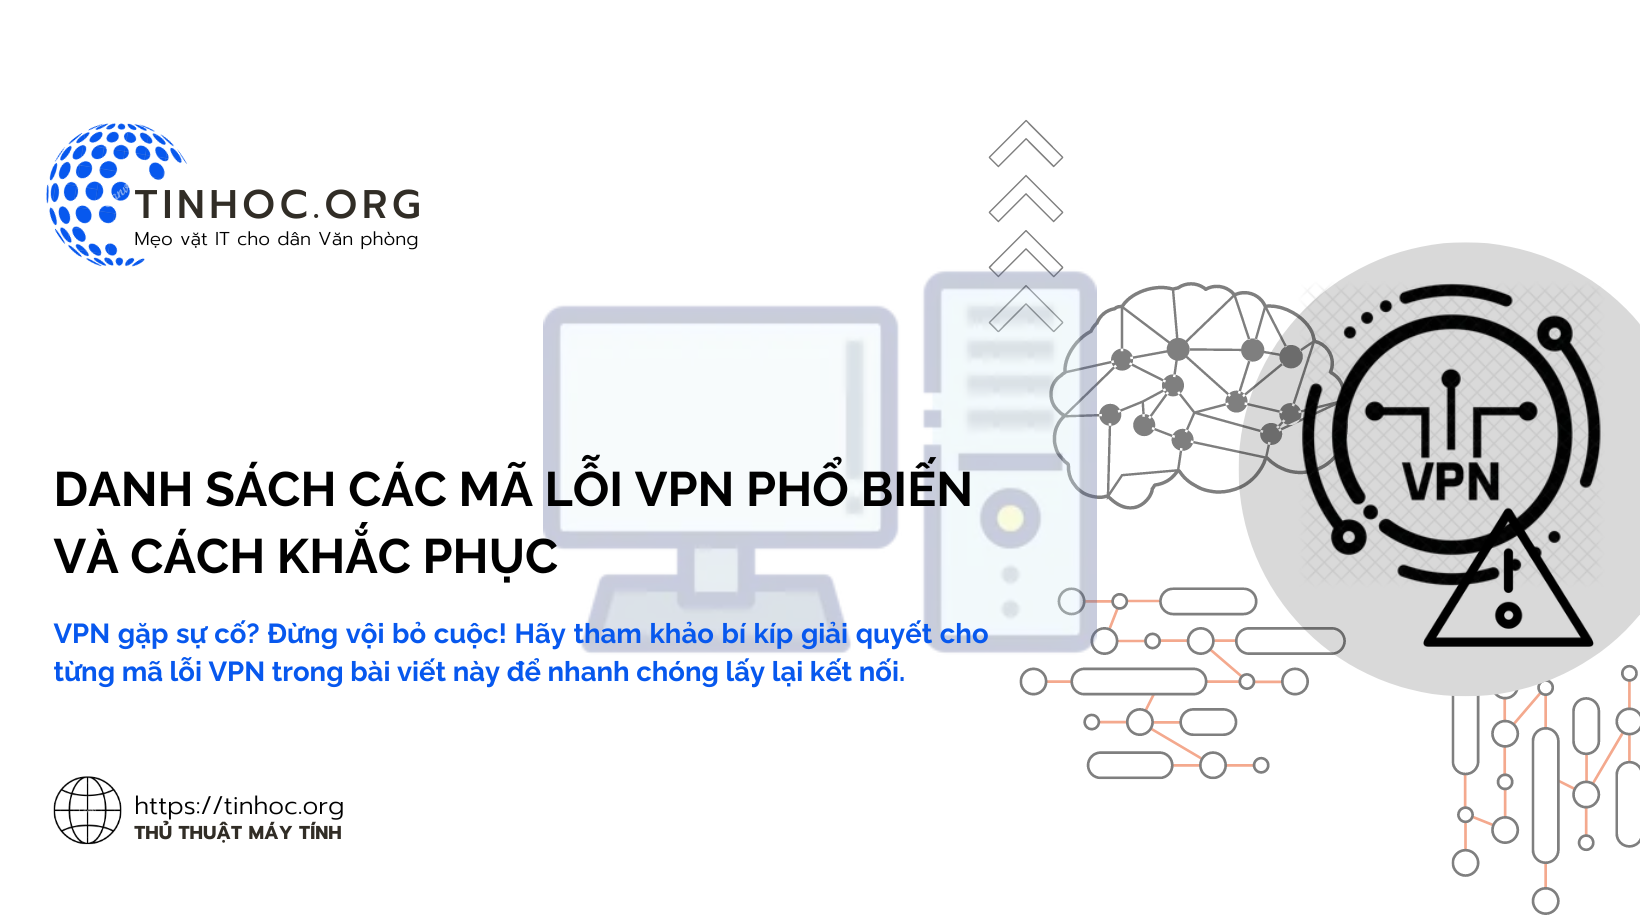 VPN gặp sự cố? Đừng vội bỏ cuộc! Hãy tham khảo bí kíp giải quyết cho từng mã lỗi VPN trong bài viết này để nhanh chóng lấy lại kết nối.